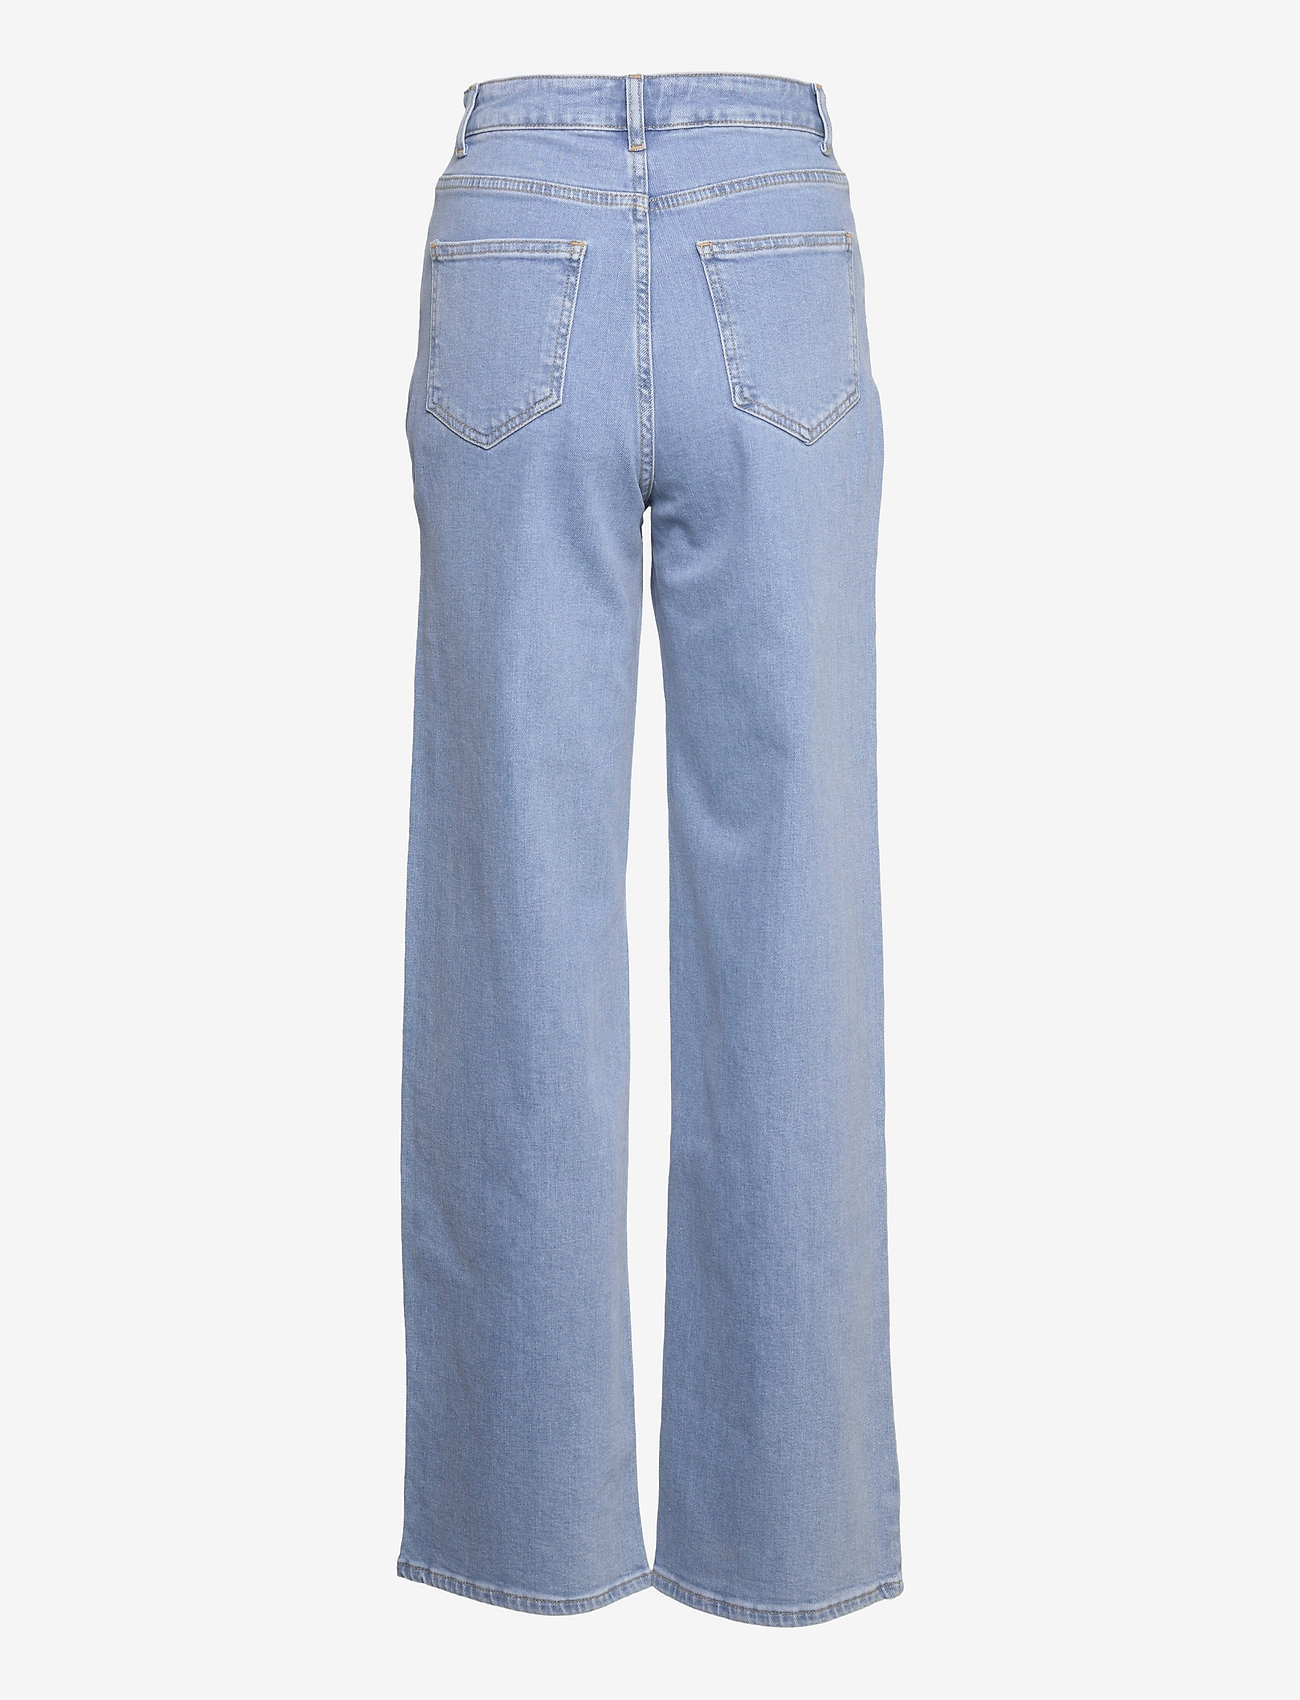 Modström - OlliMD jeans - džinsi - light blue - 1